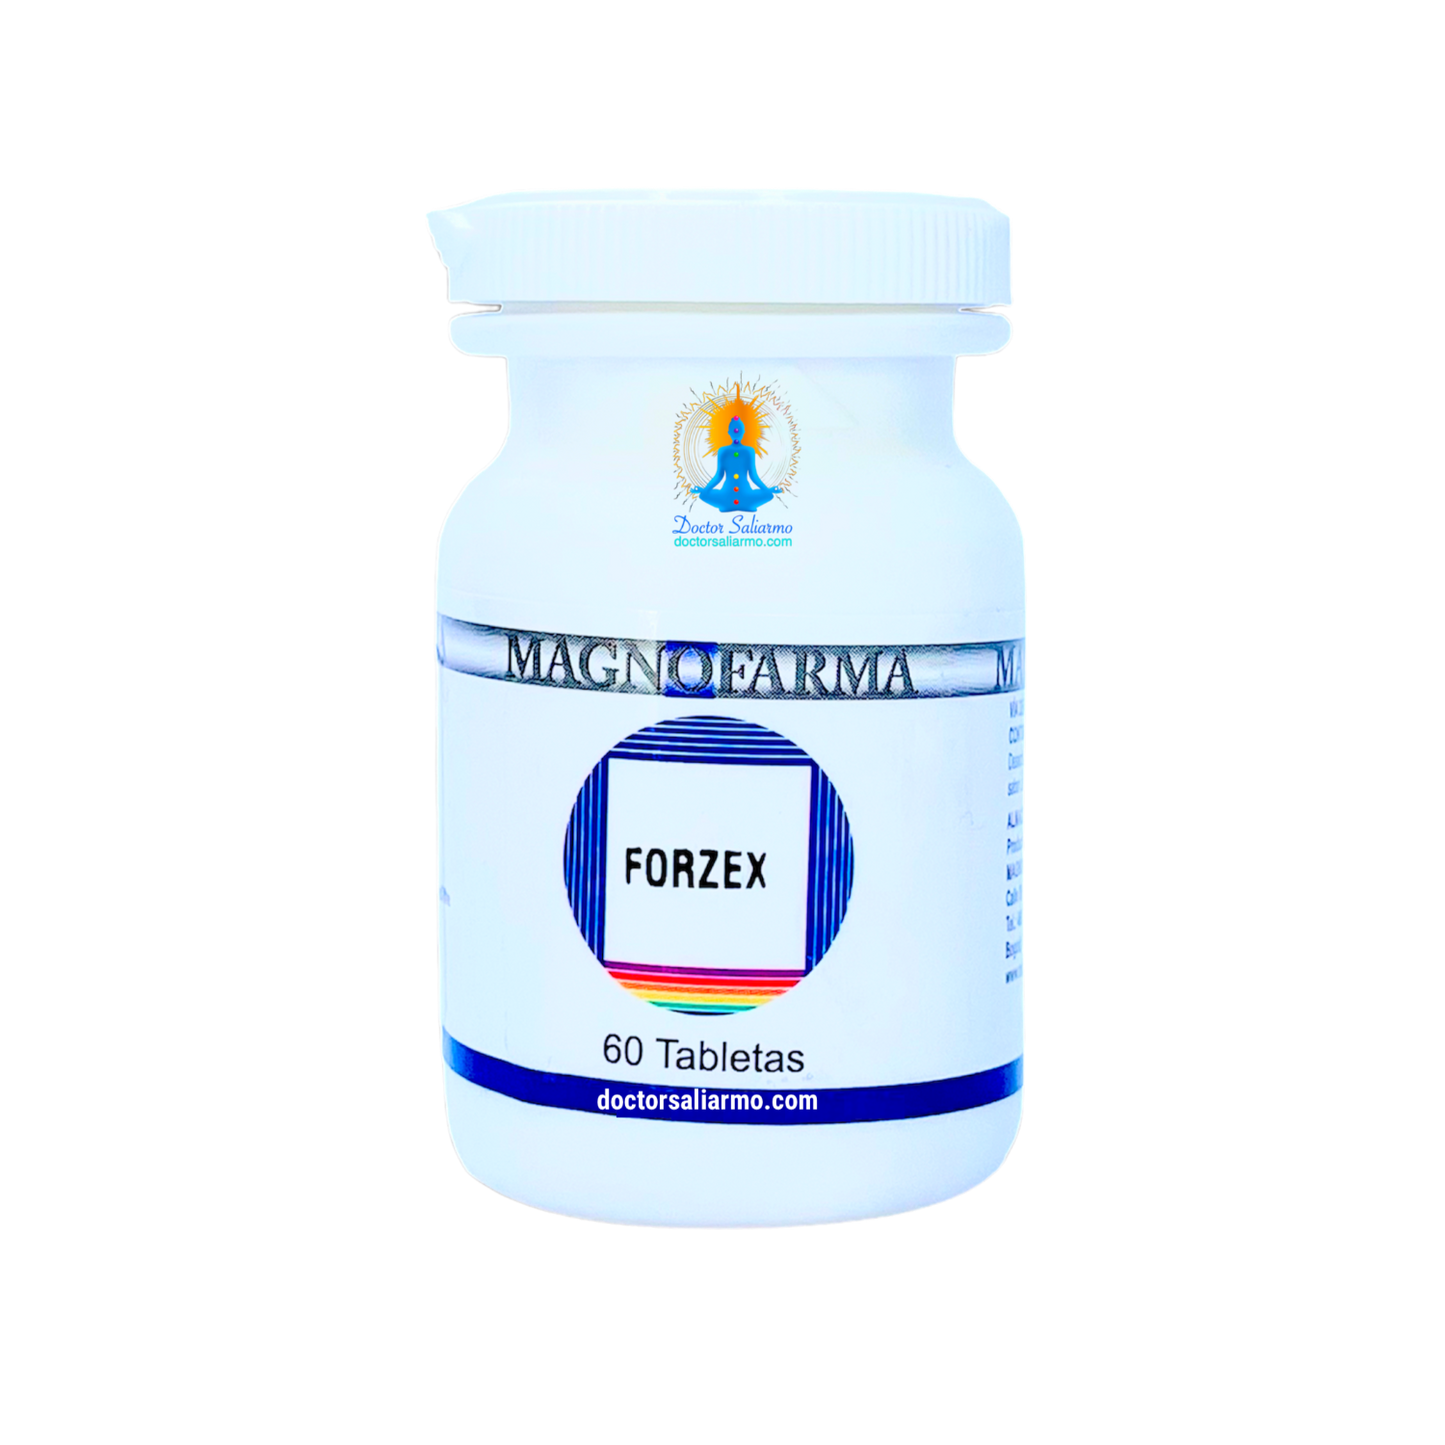 Forzex tabletas están indicadas para la disfunción sexual masculina y/o disfunción erectil.